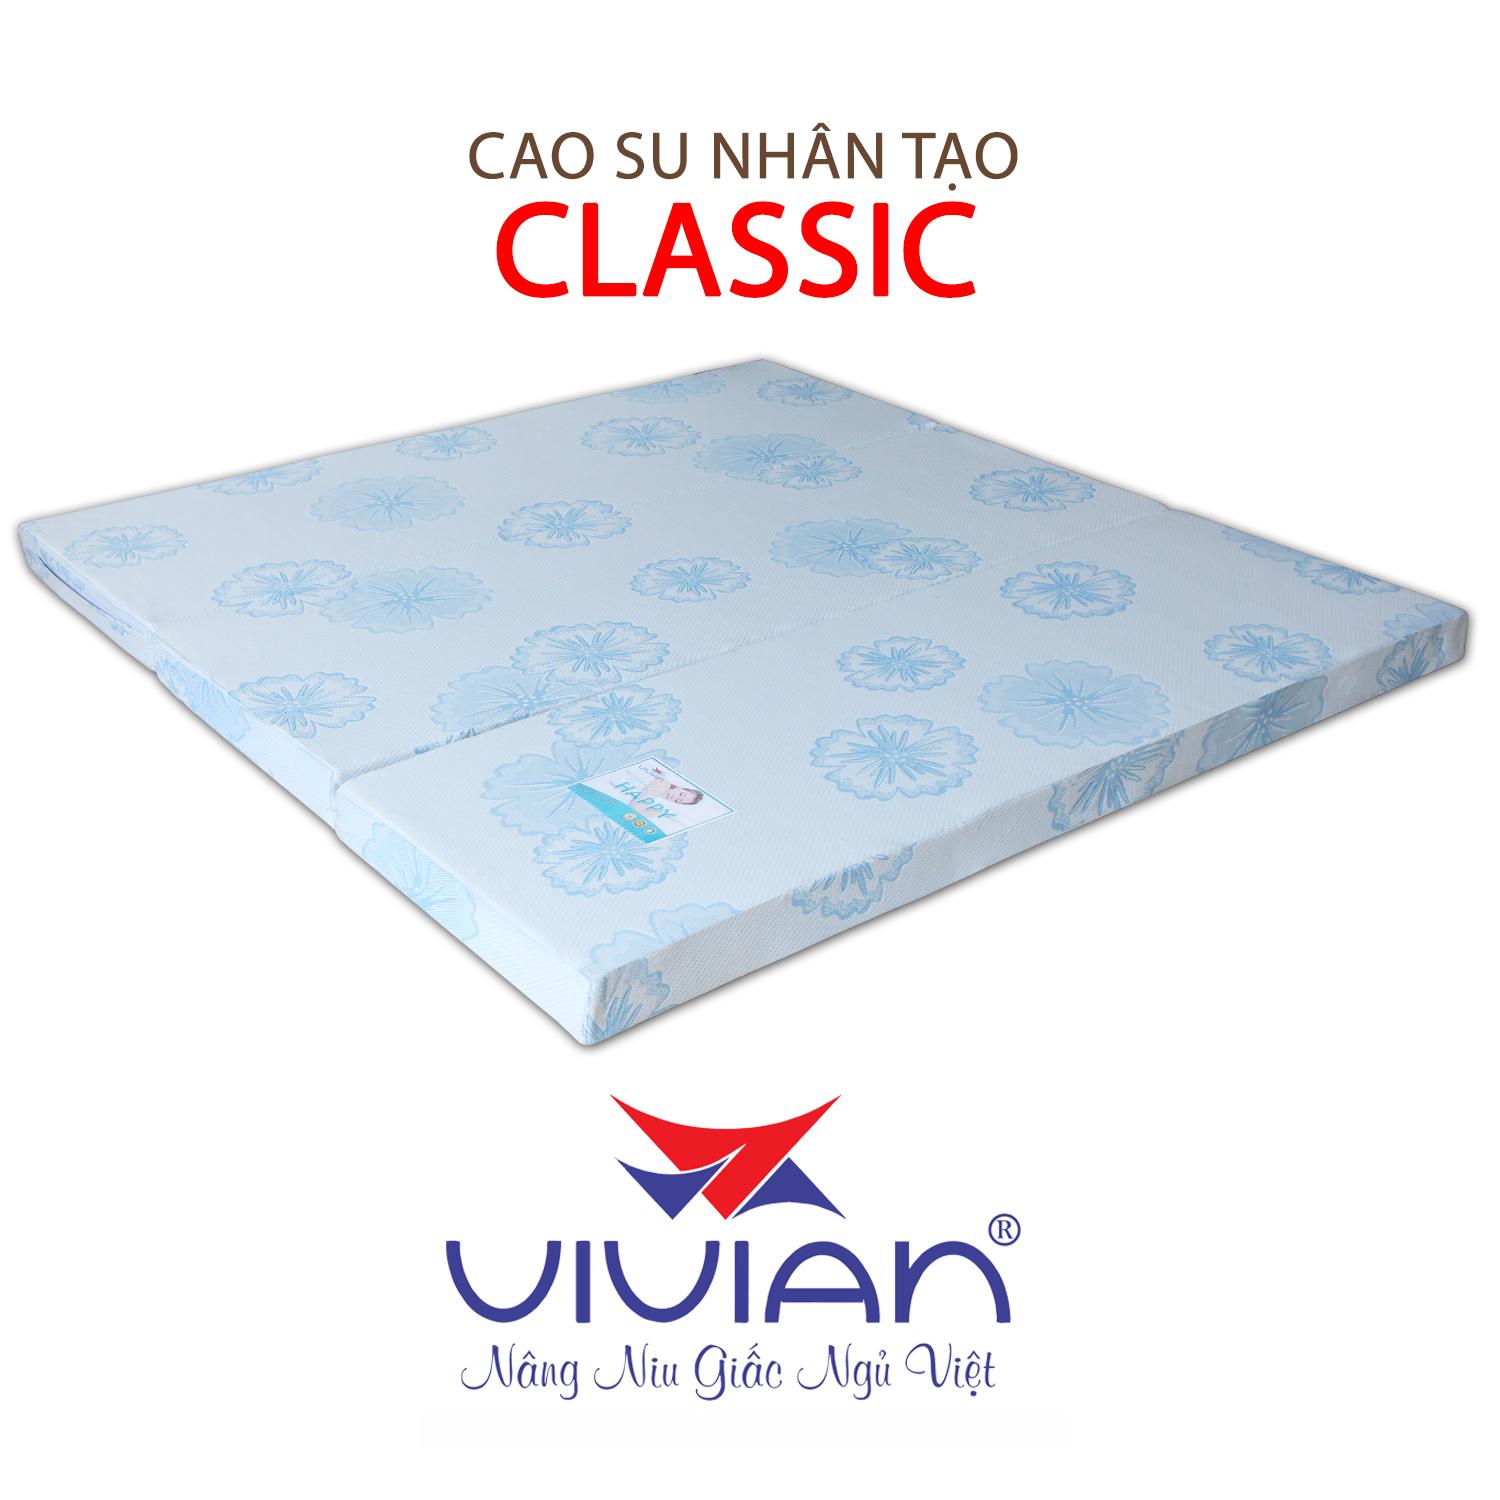 NỆM CAO SU NHÂN TẠO CLASSIC GẤP 3 VIVIAN 180X200X15